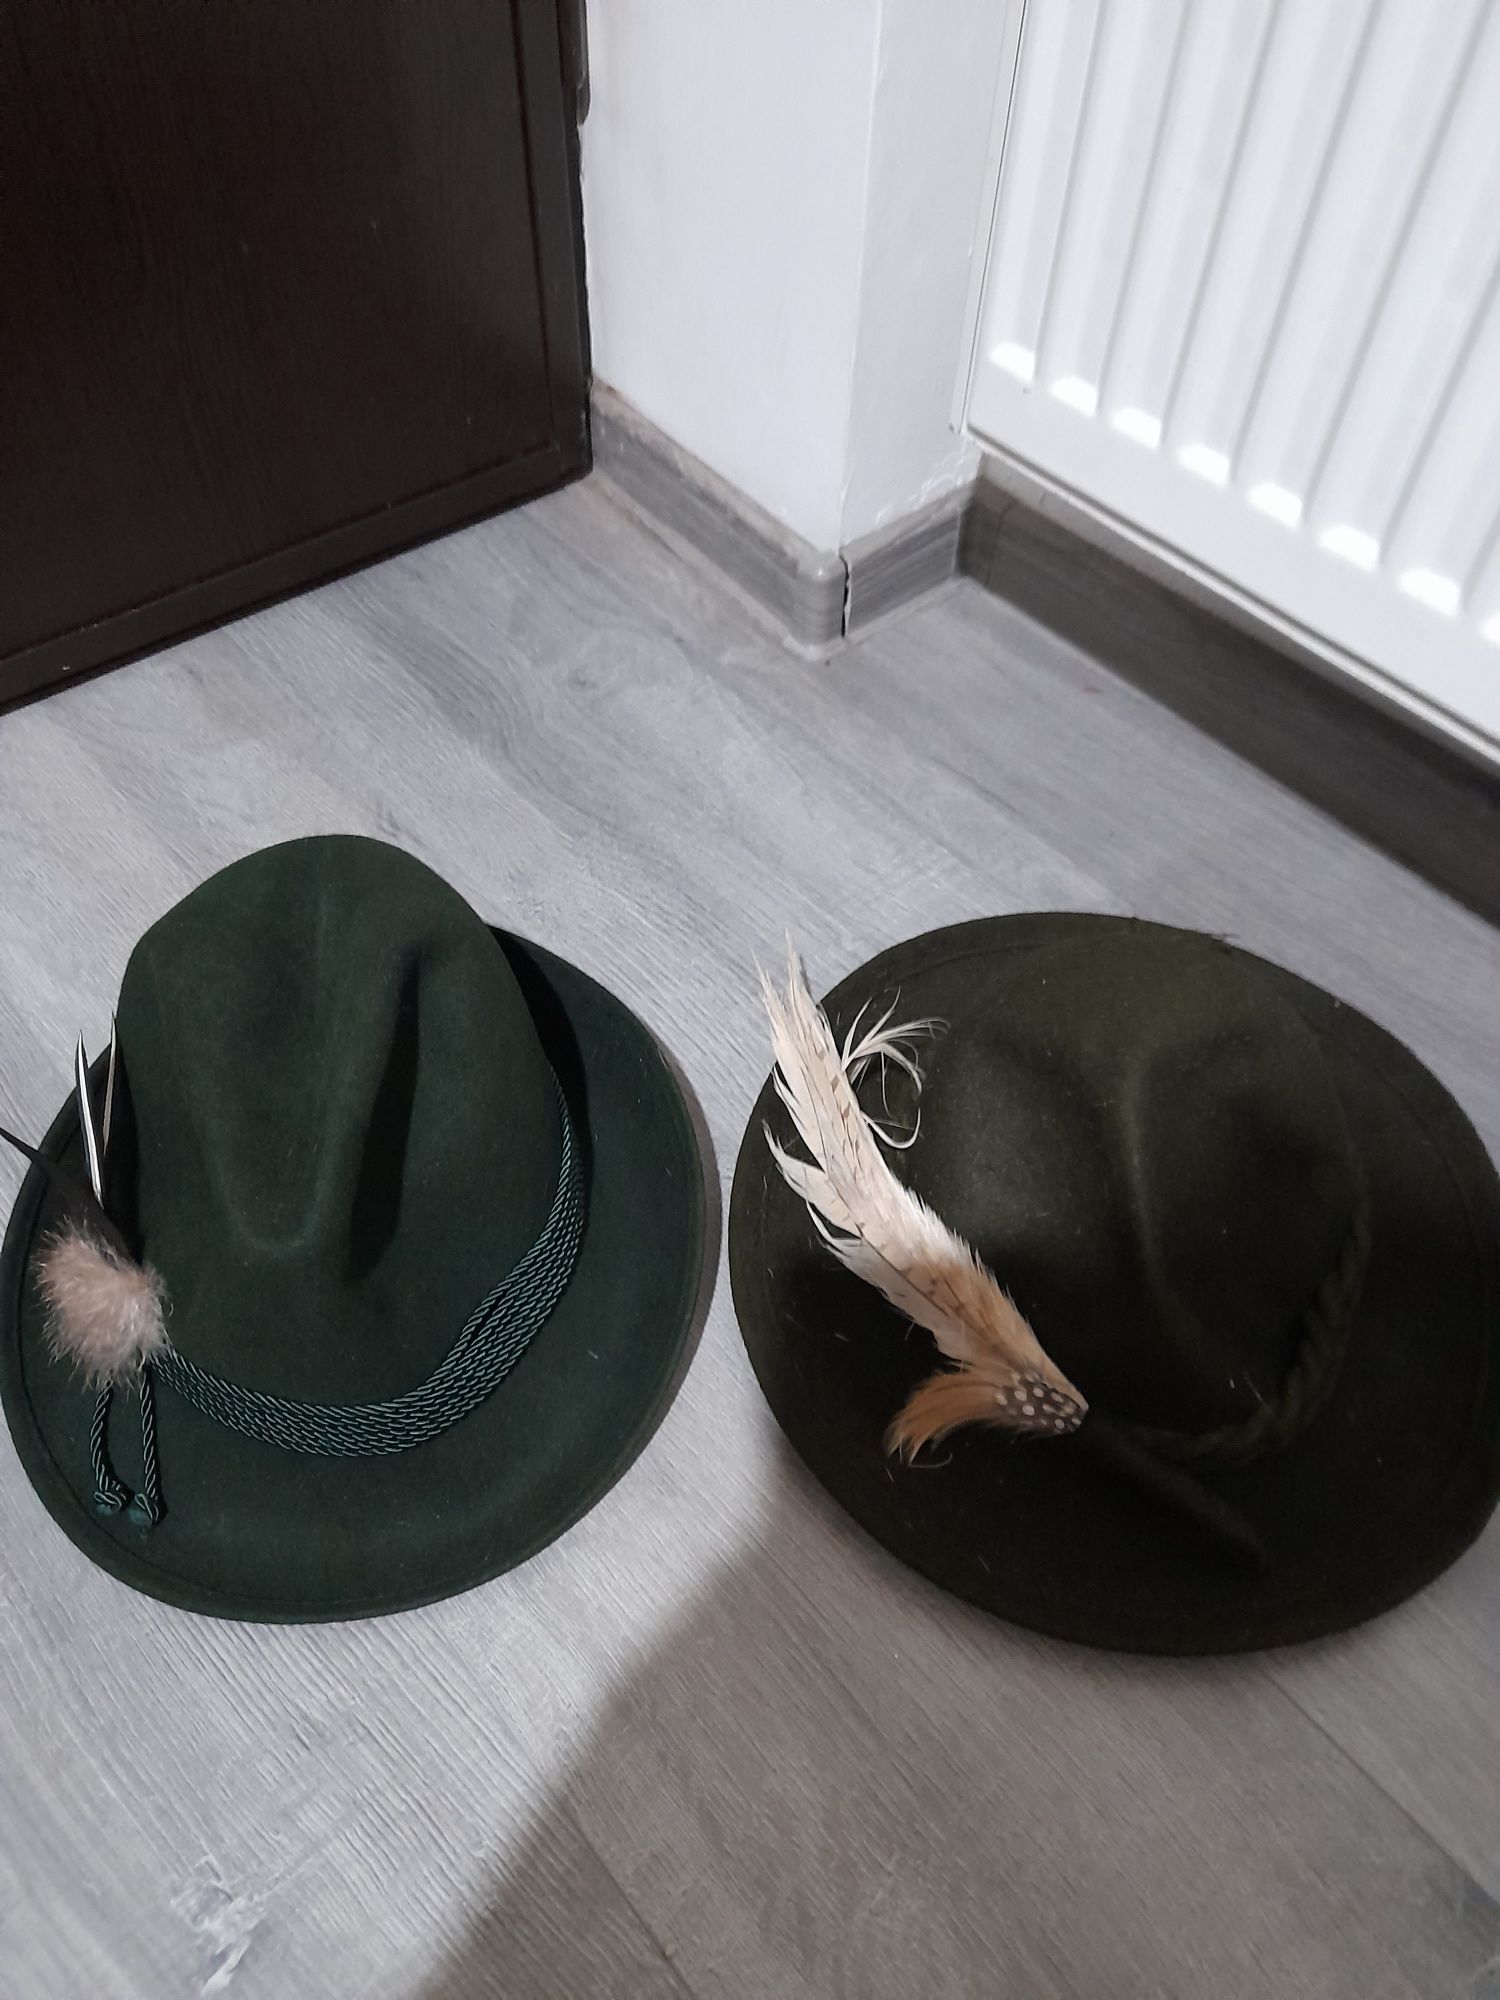 Pălării vânătoare, germane